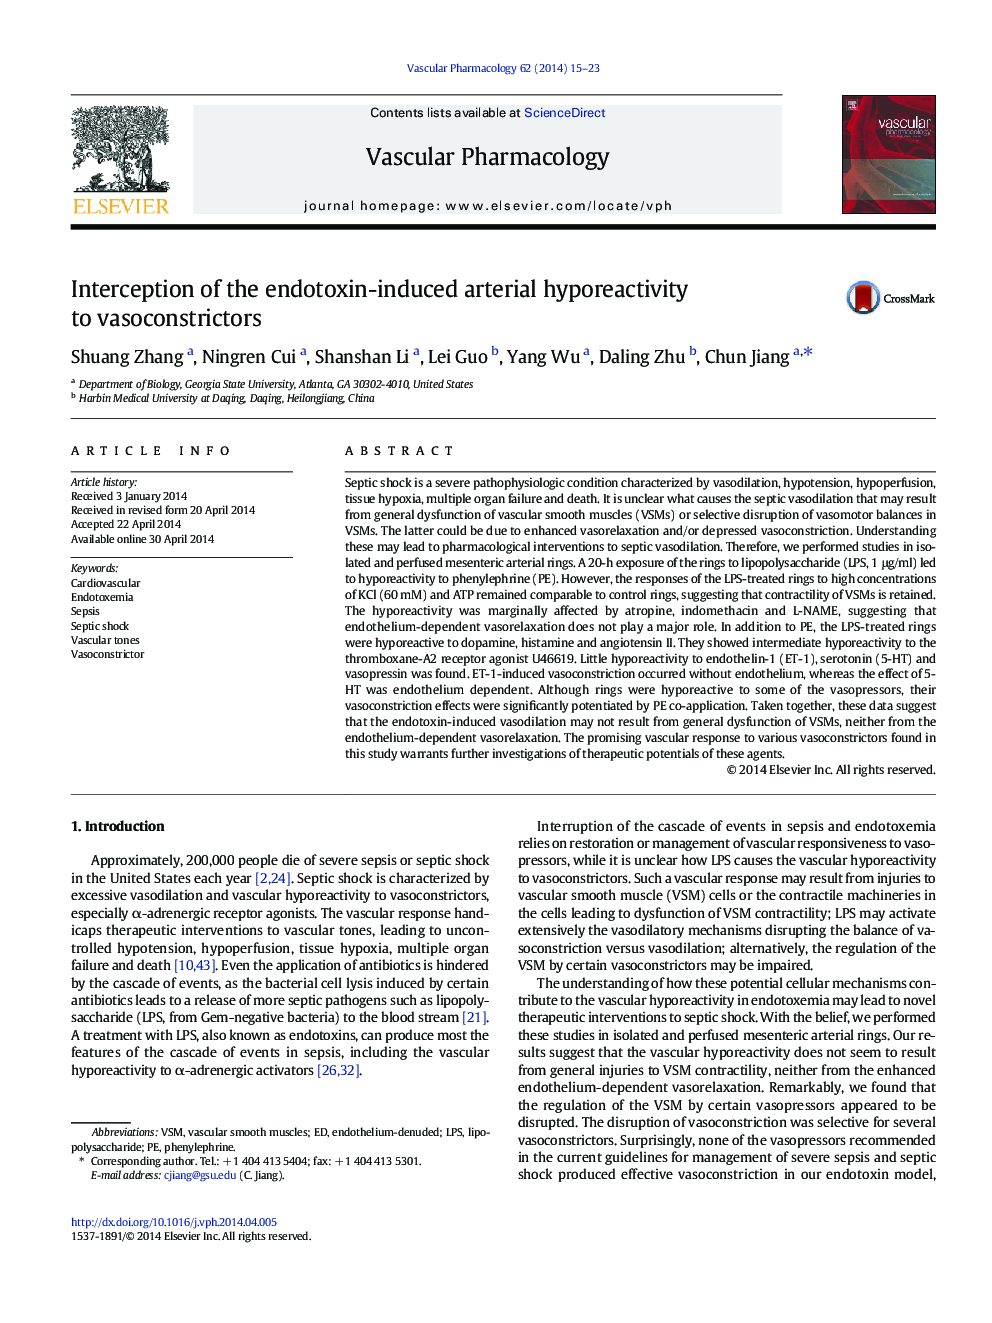 Interception of the endotoxin-induced arterial hyporeactivity to vasoconstrictors